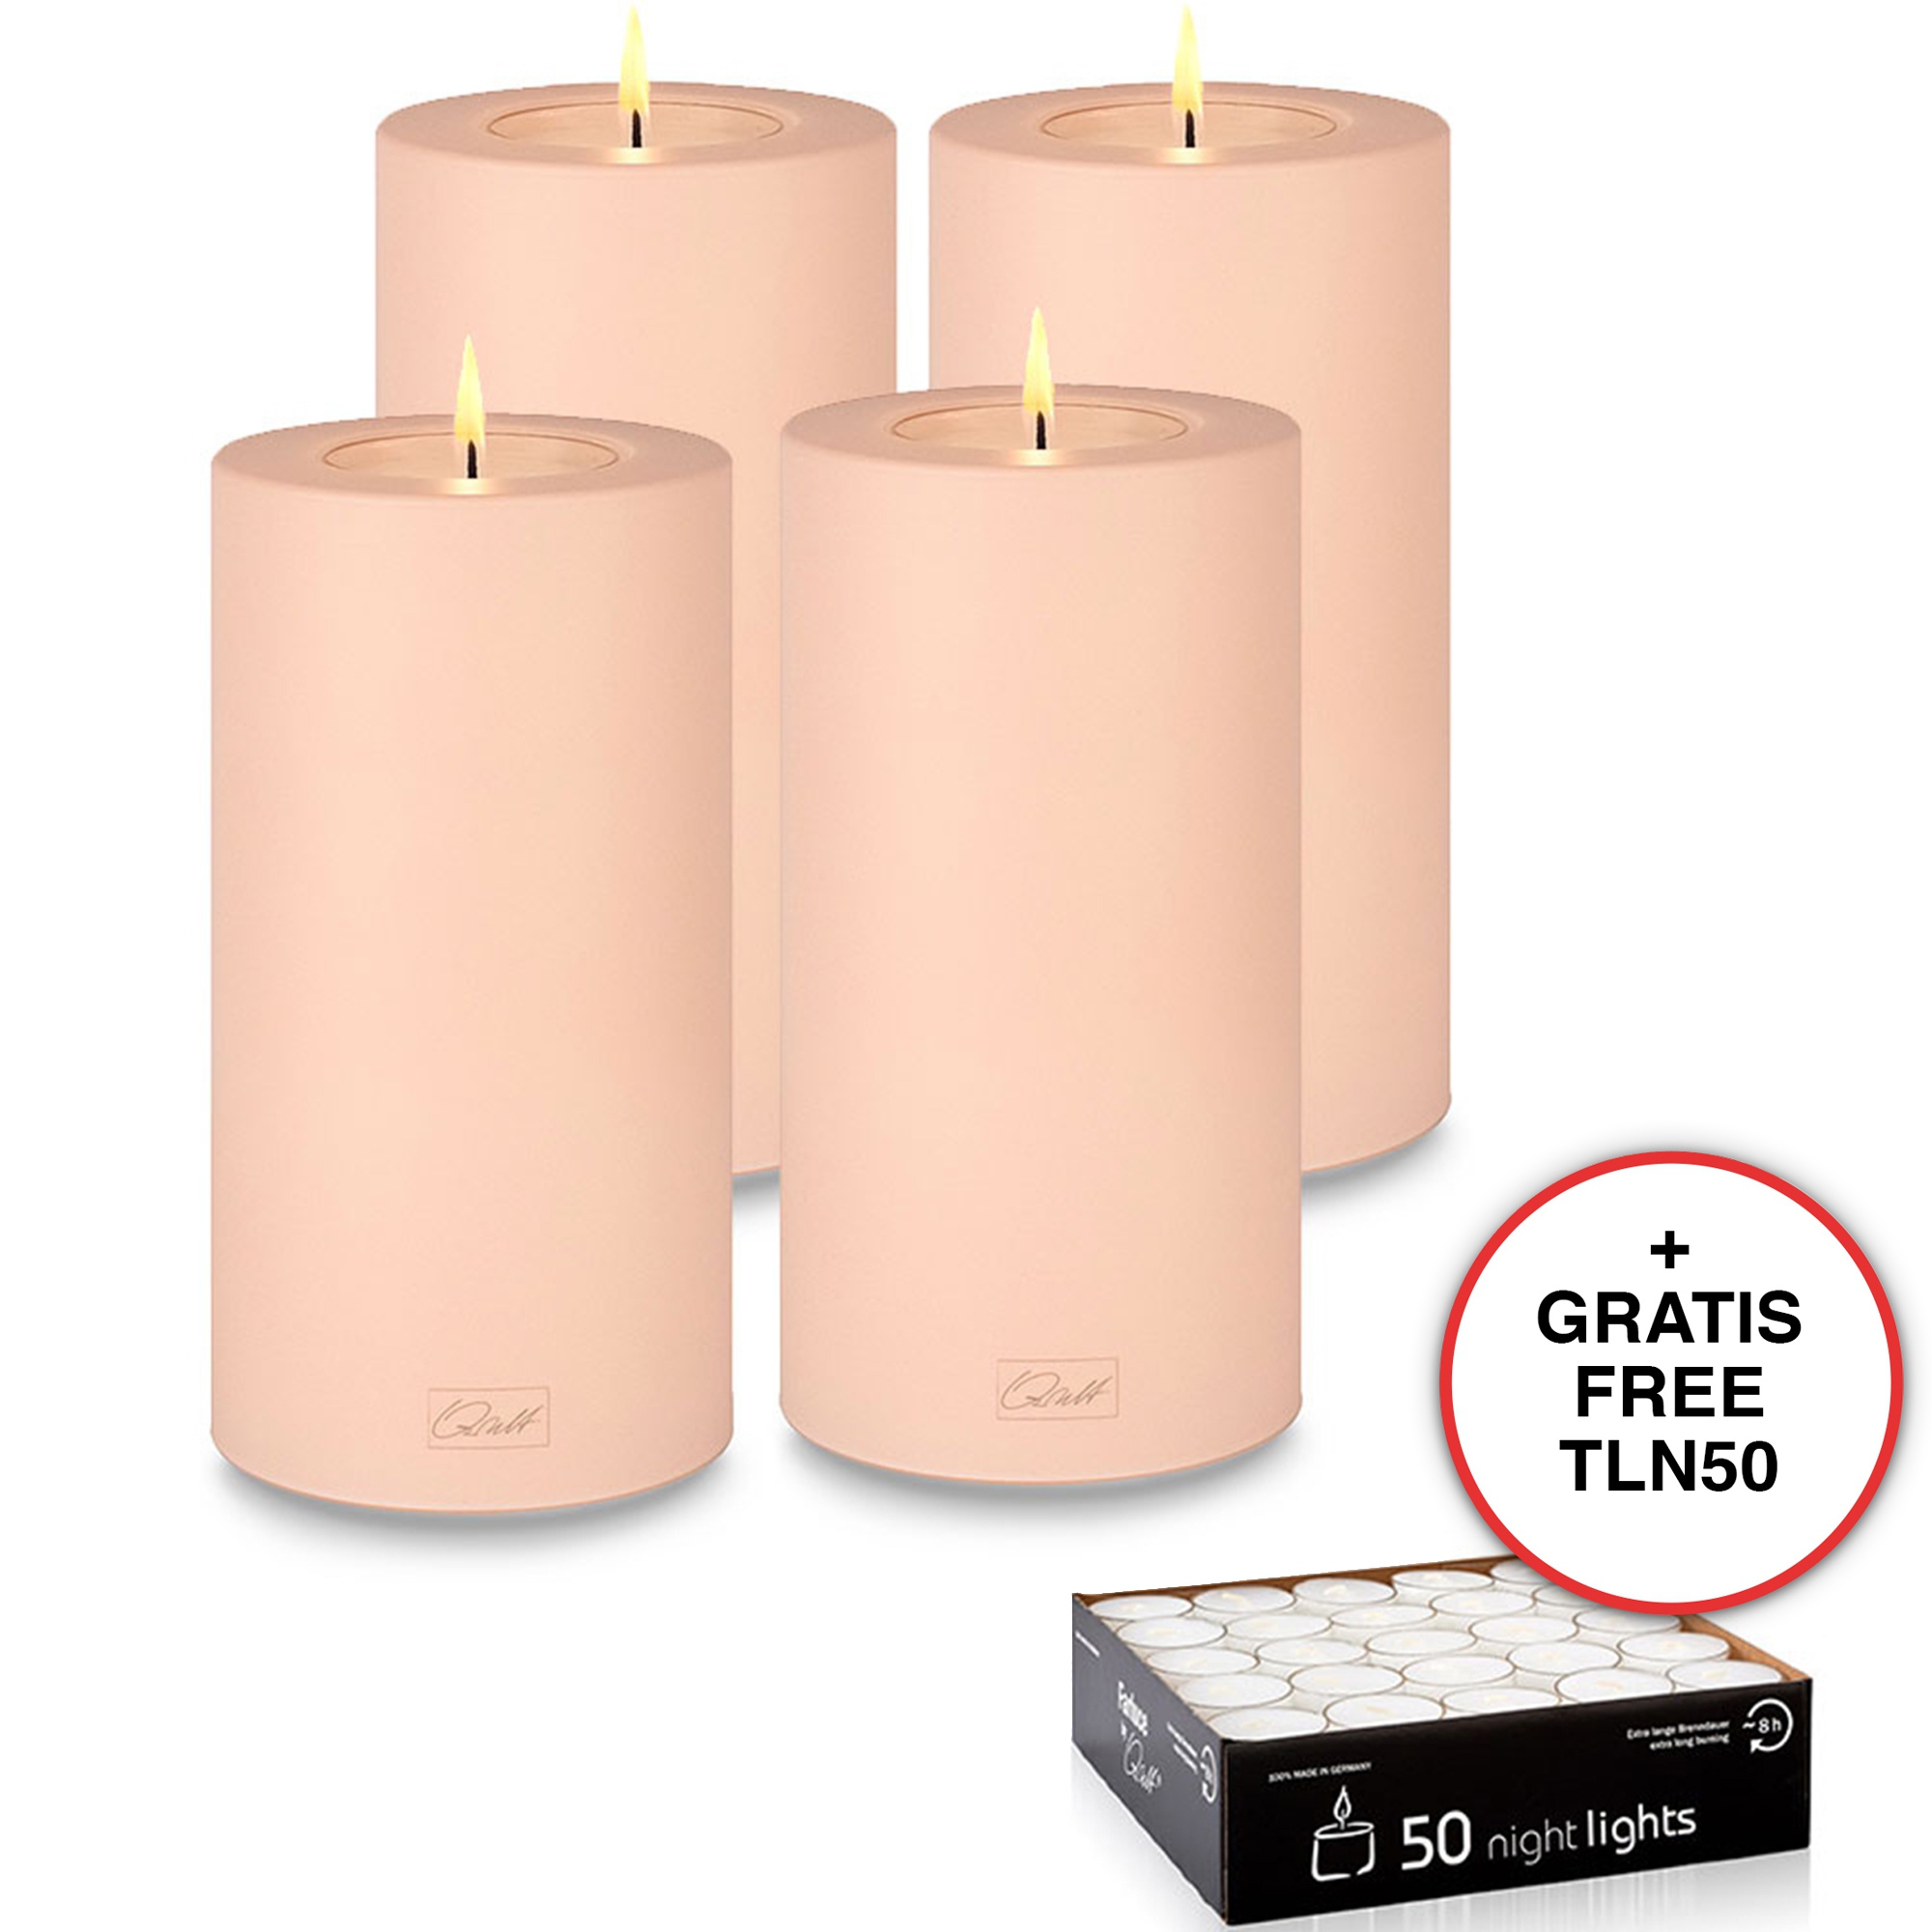 Qult Farluce Trend - Tealight Candle Holder - rose - Ø 8 cm H 15 cm - Set of 4